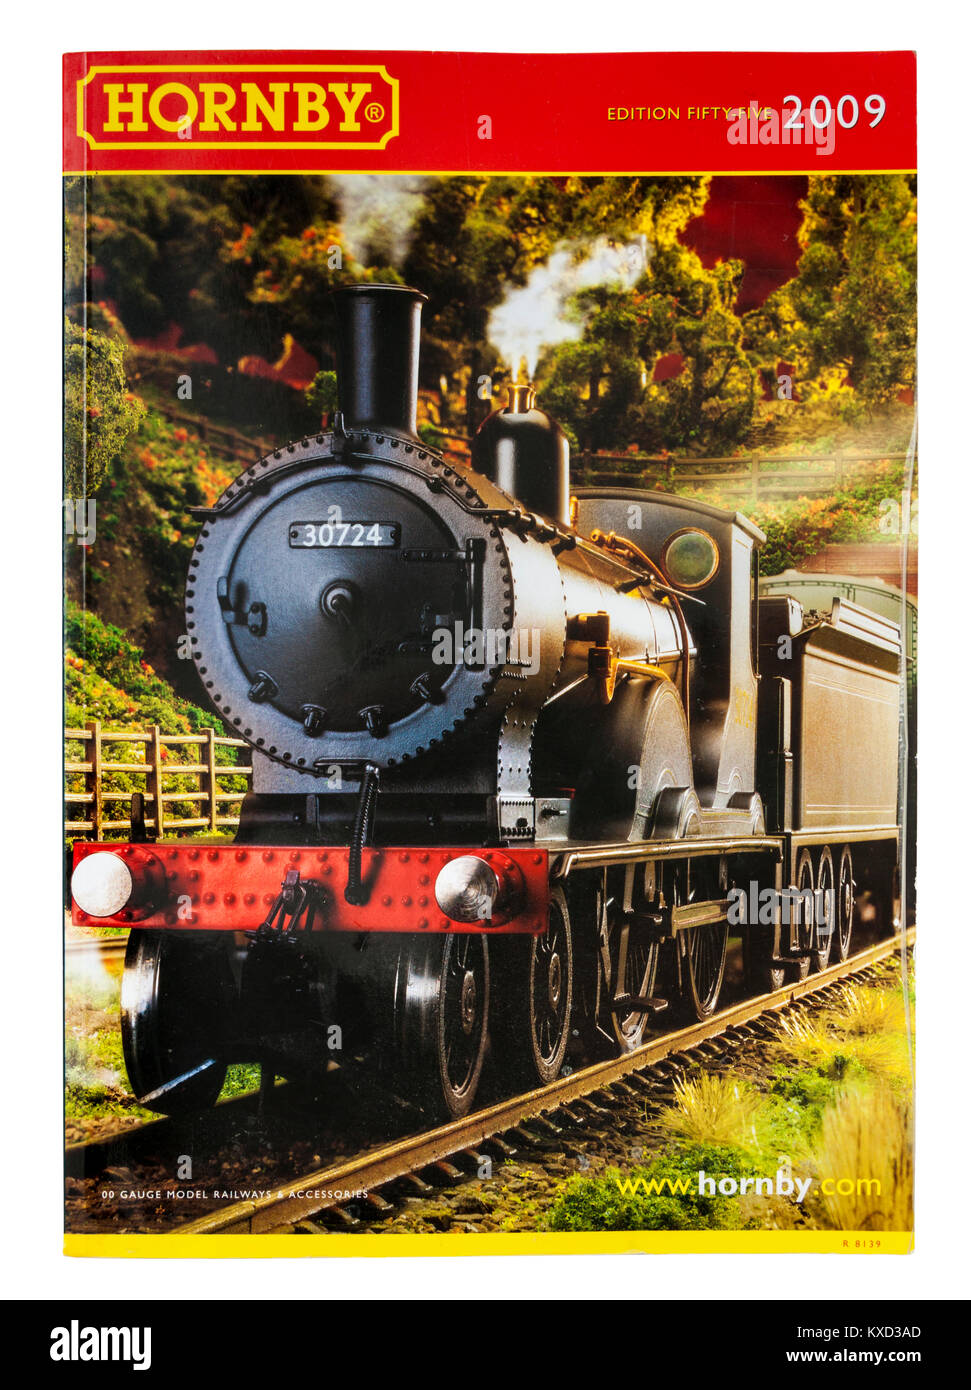 Hornby Modellbahn Katalog aus dem Jahr 2009 (Ausgabe 55) mit London & South Western Railway T9 4-4-0 Lokomotive von 1899 von D. Drummond. Stockfoto